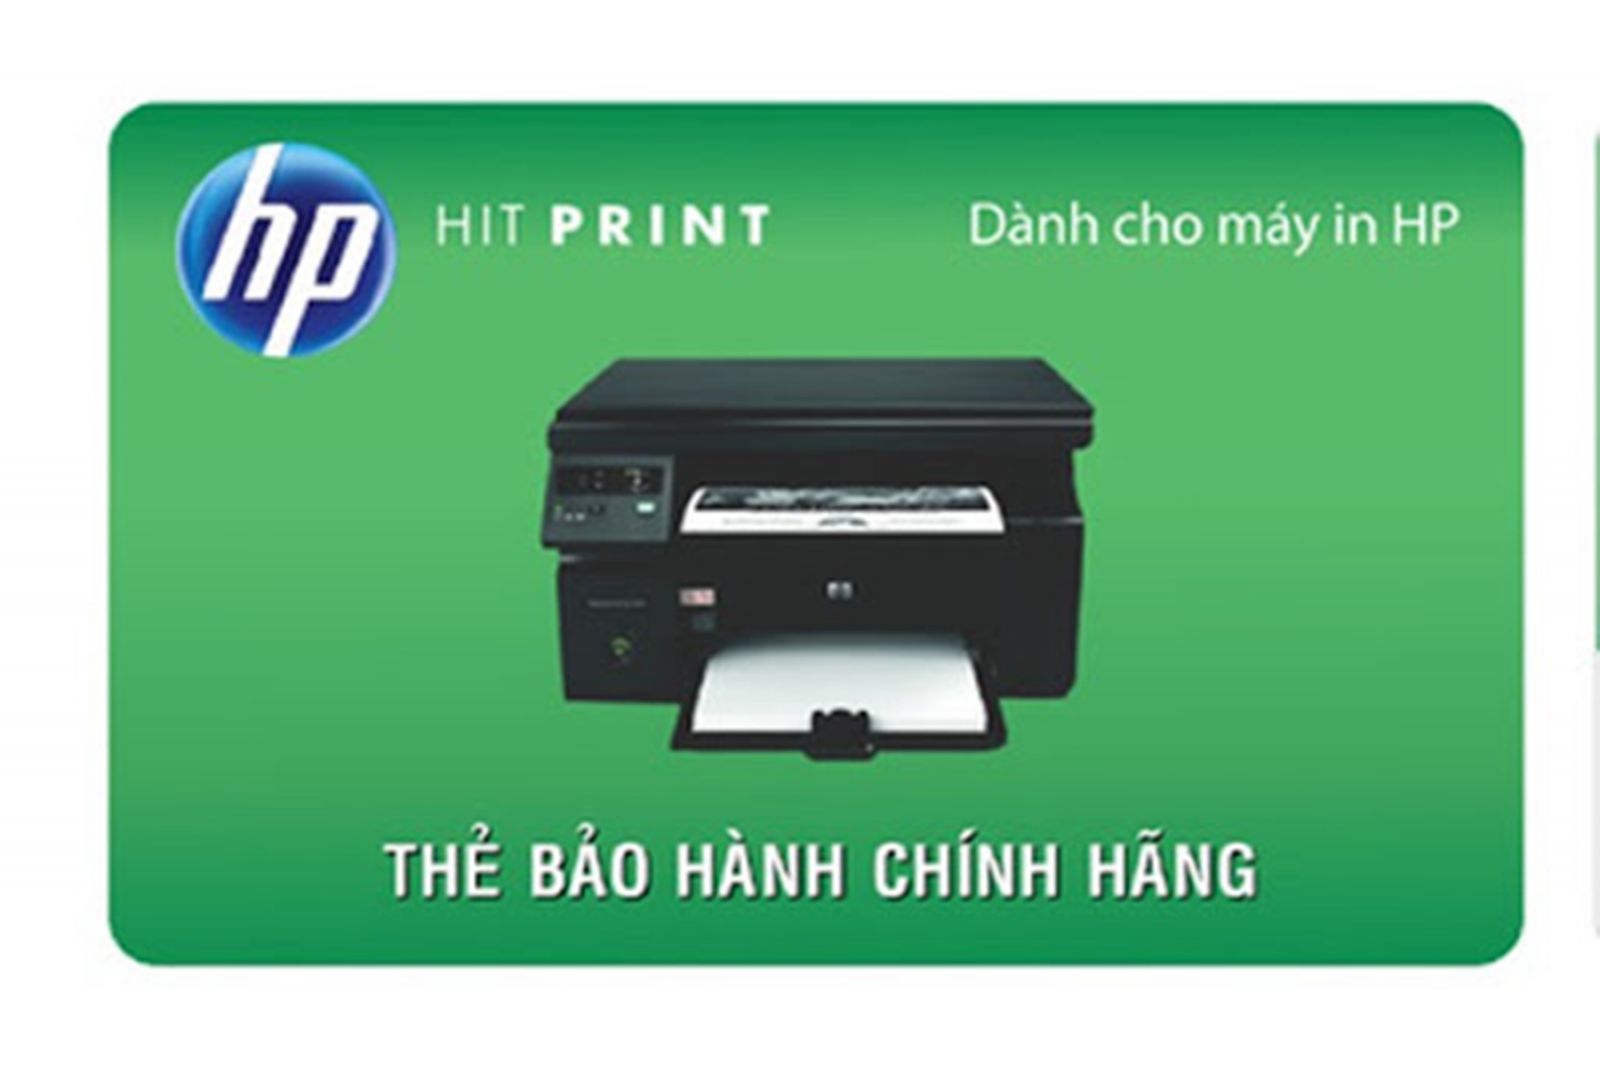 HP công bố thẻ bảo hành cho máy in trên toàn quốc